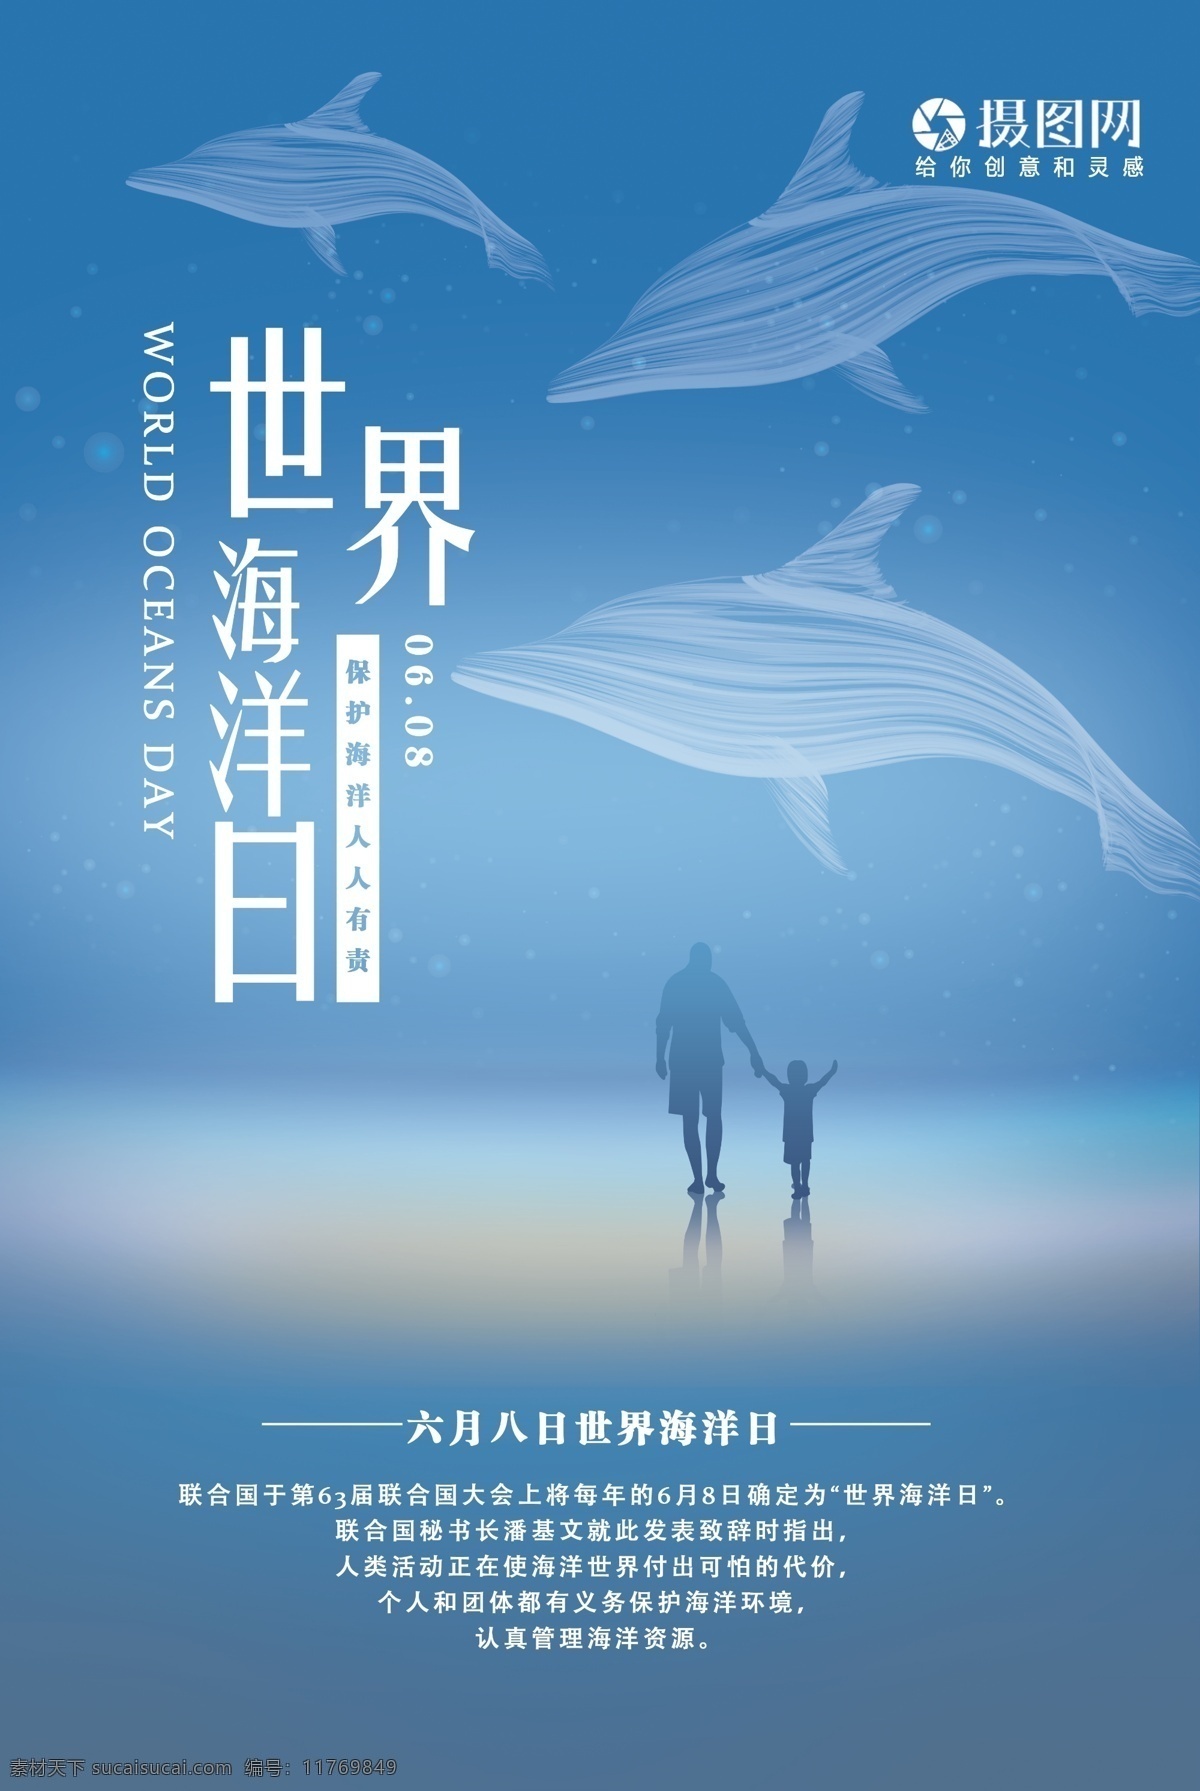 世界 海洋 日 海报 世界海洋日 海豚 深海 保护自然 生态 蓝色背景 节日海报